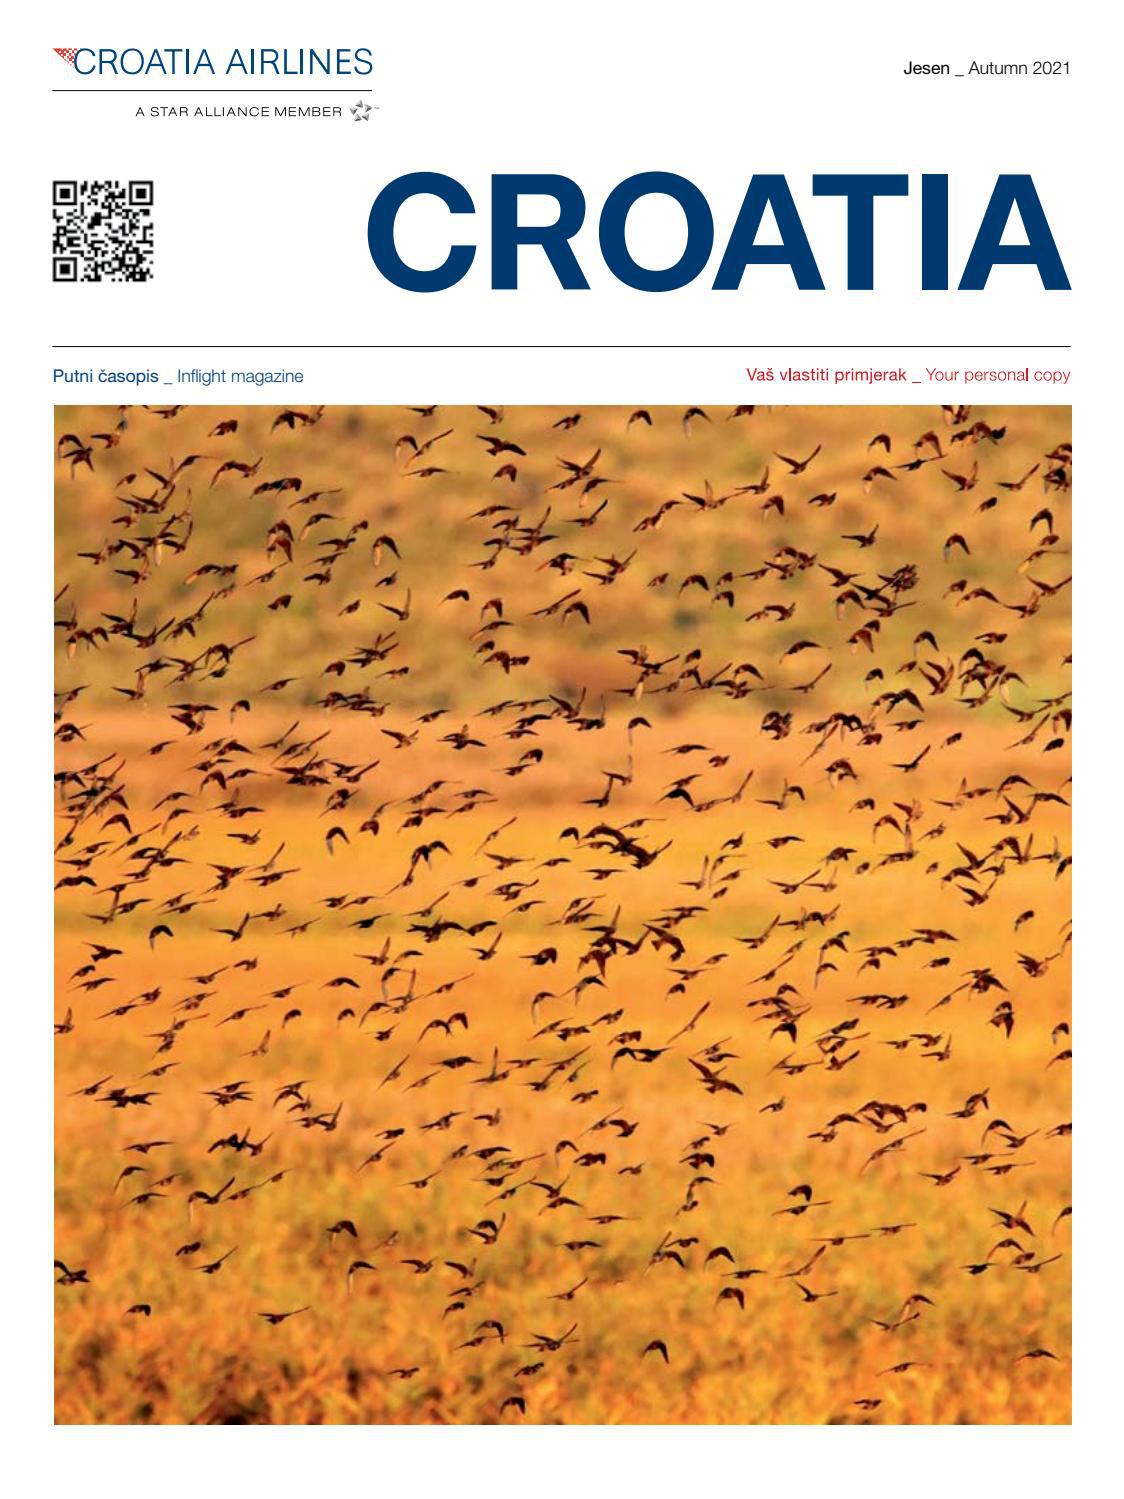 Putni ?asopis CROATIA jesen 2021 / Inflight magazine CROATIA Autumn 2021